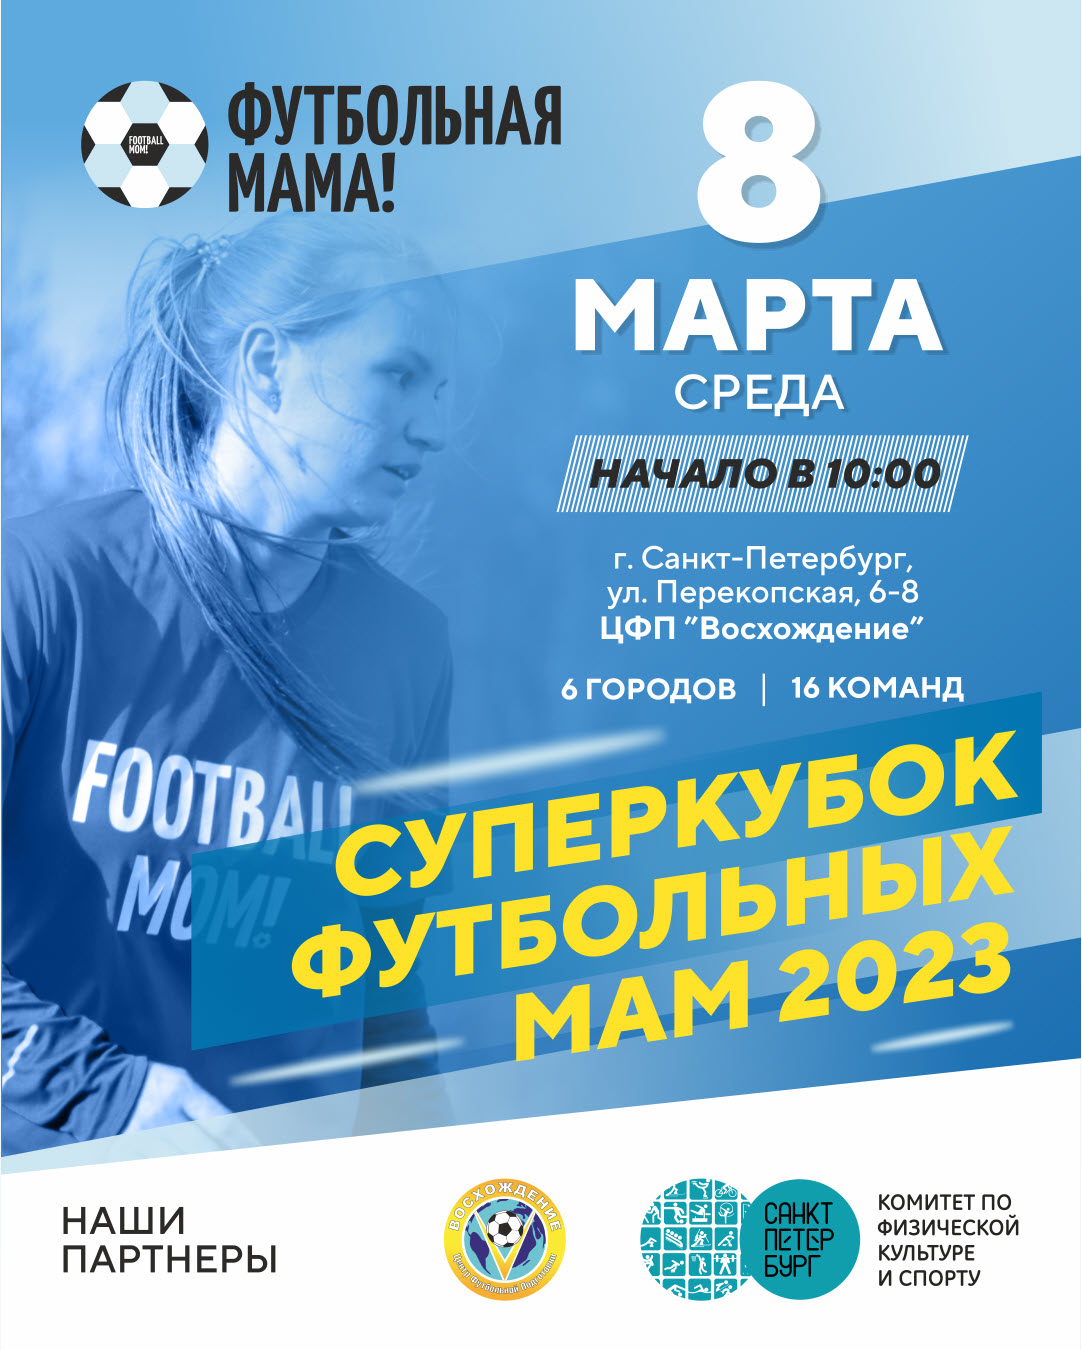 фото: В Санкт-Петербурге состоится "Суперкубок футбольных мам 2023"